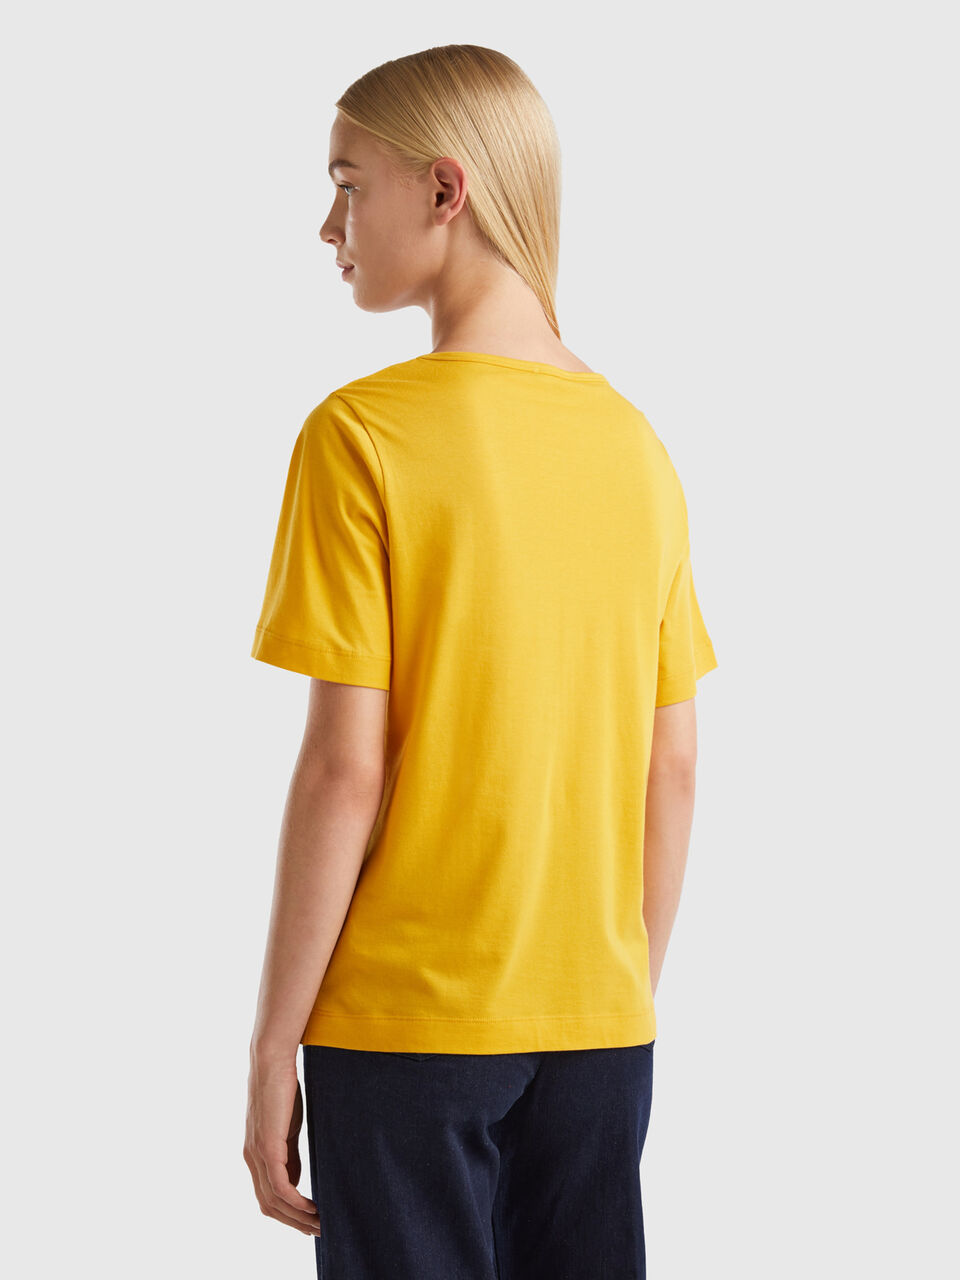 Camiseta publicitaria amarilla manga corta ANB - Fancolor